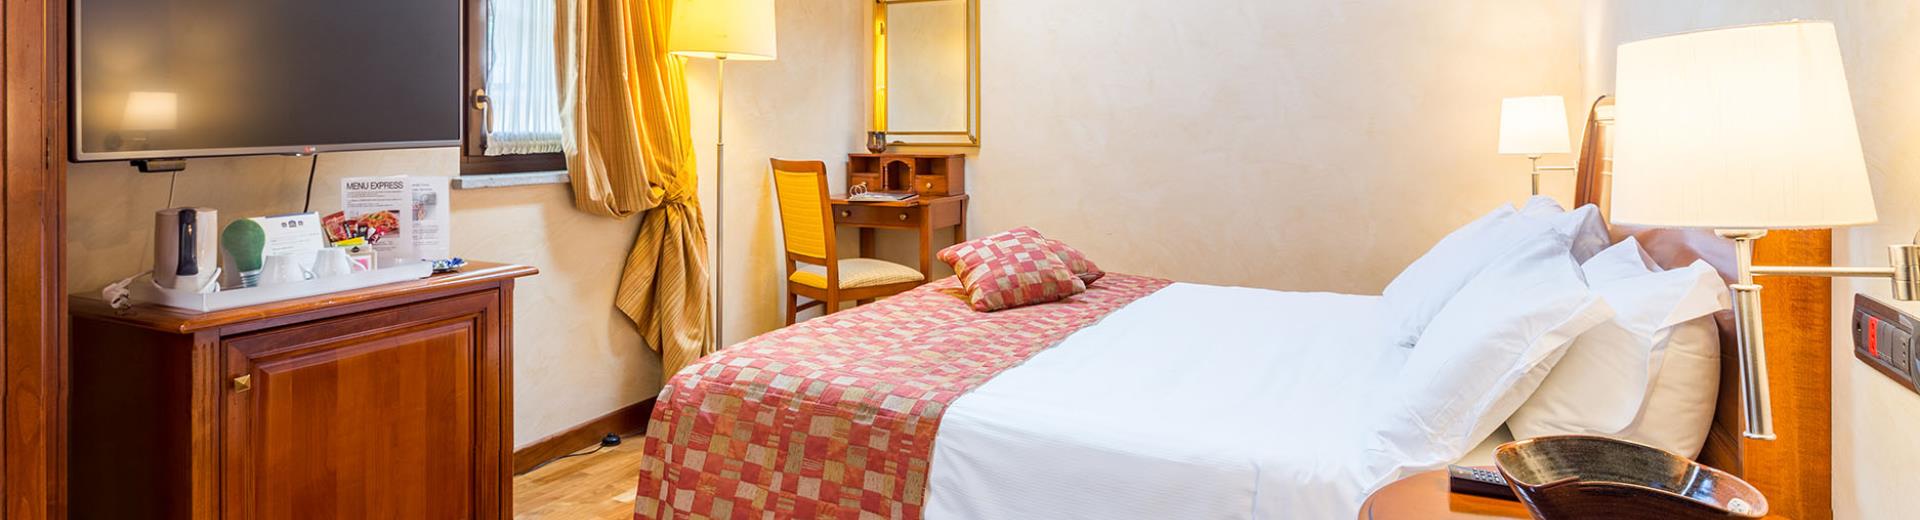 Las habitaciones superiores del Best Western Hotel Le Rondini. a sólo 20 minutos desde el centro de Turín, cerca del estadio de la Juventus, 10 minutos del aeropuerto de Caselle, son joyas de elegancia y encanto. Acabados finos, cabina de ducha regeneradora con hidromasaje y baño turco.